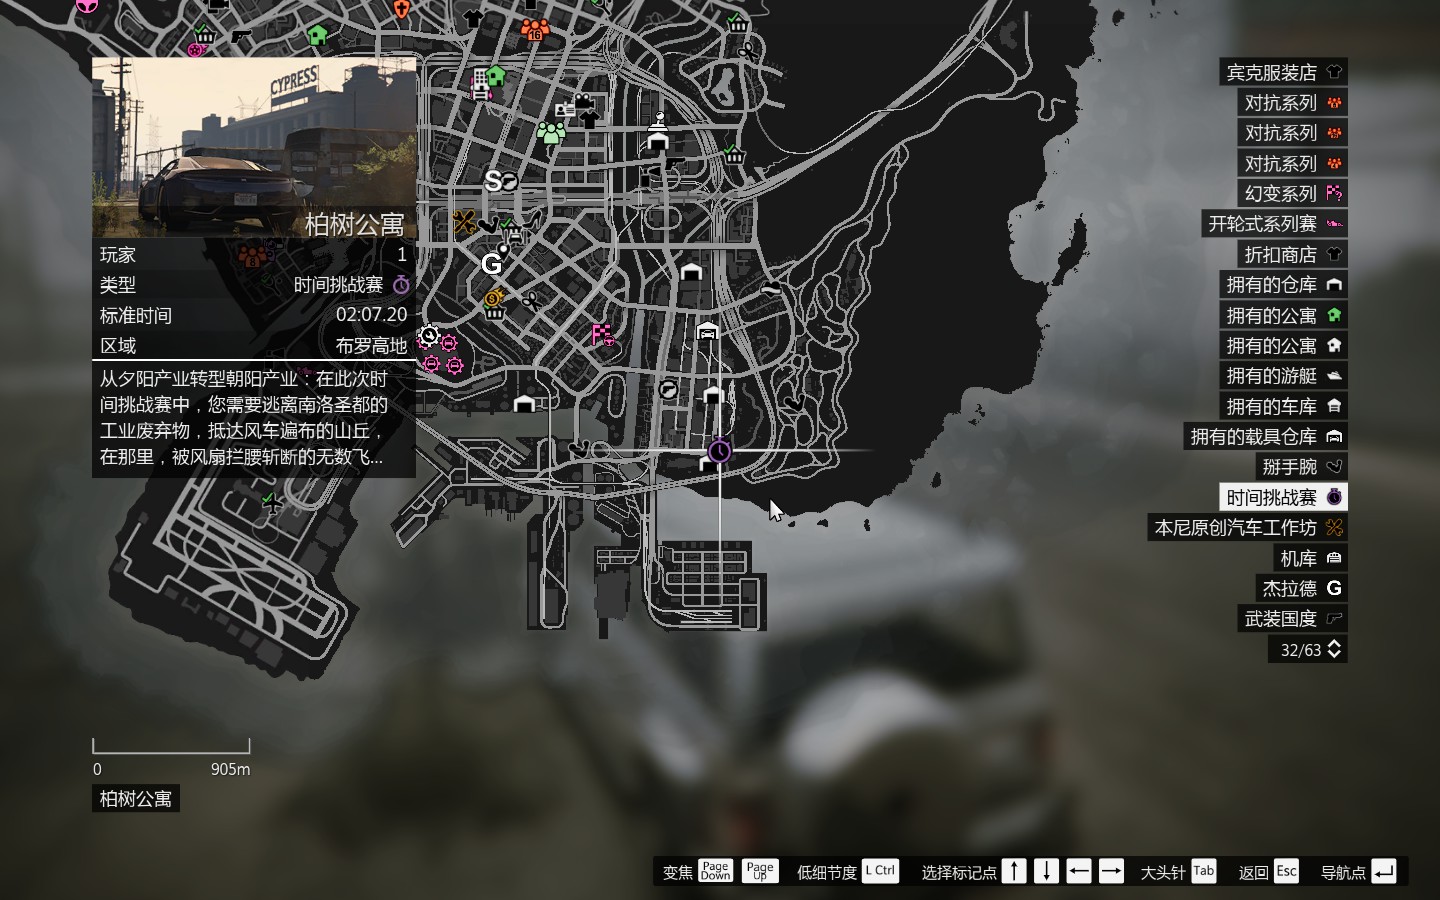 侠盗猎车手5(GTA5)公开战局赚钱玩法讲解分析